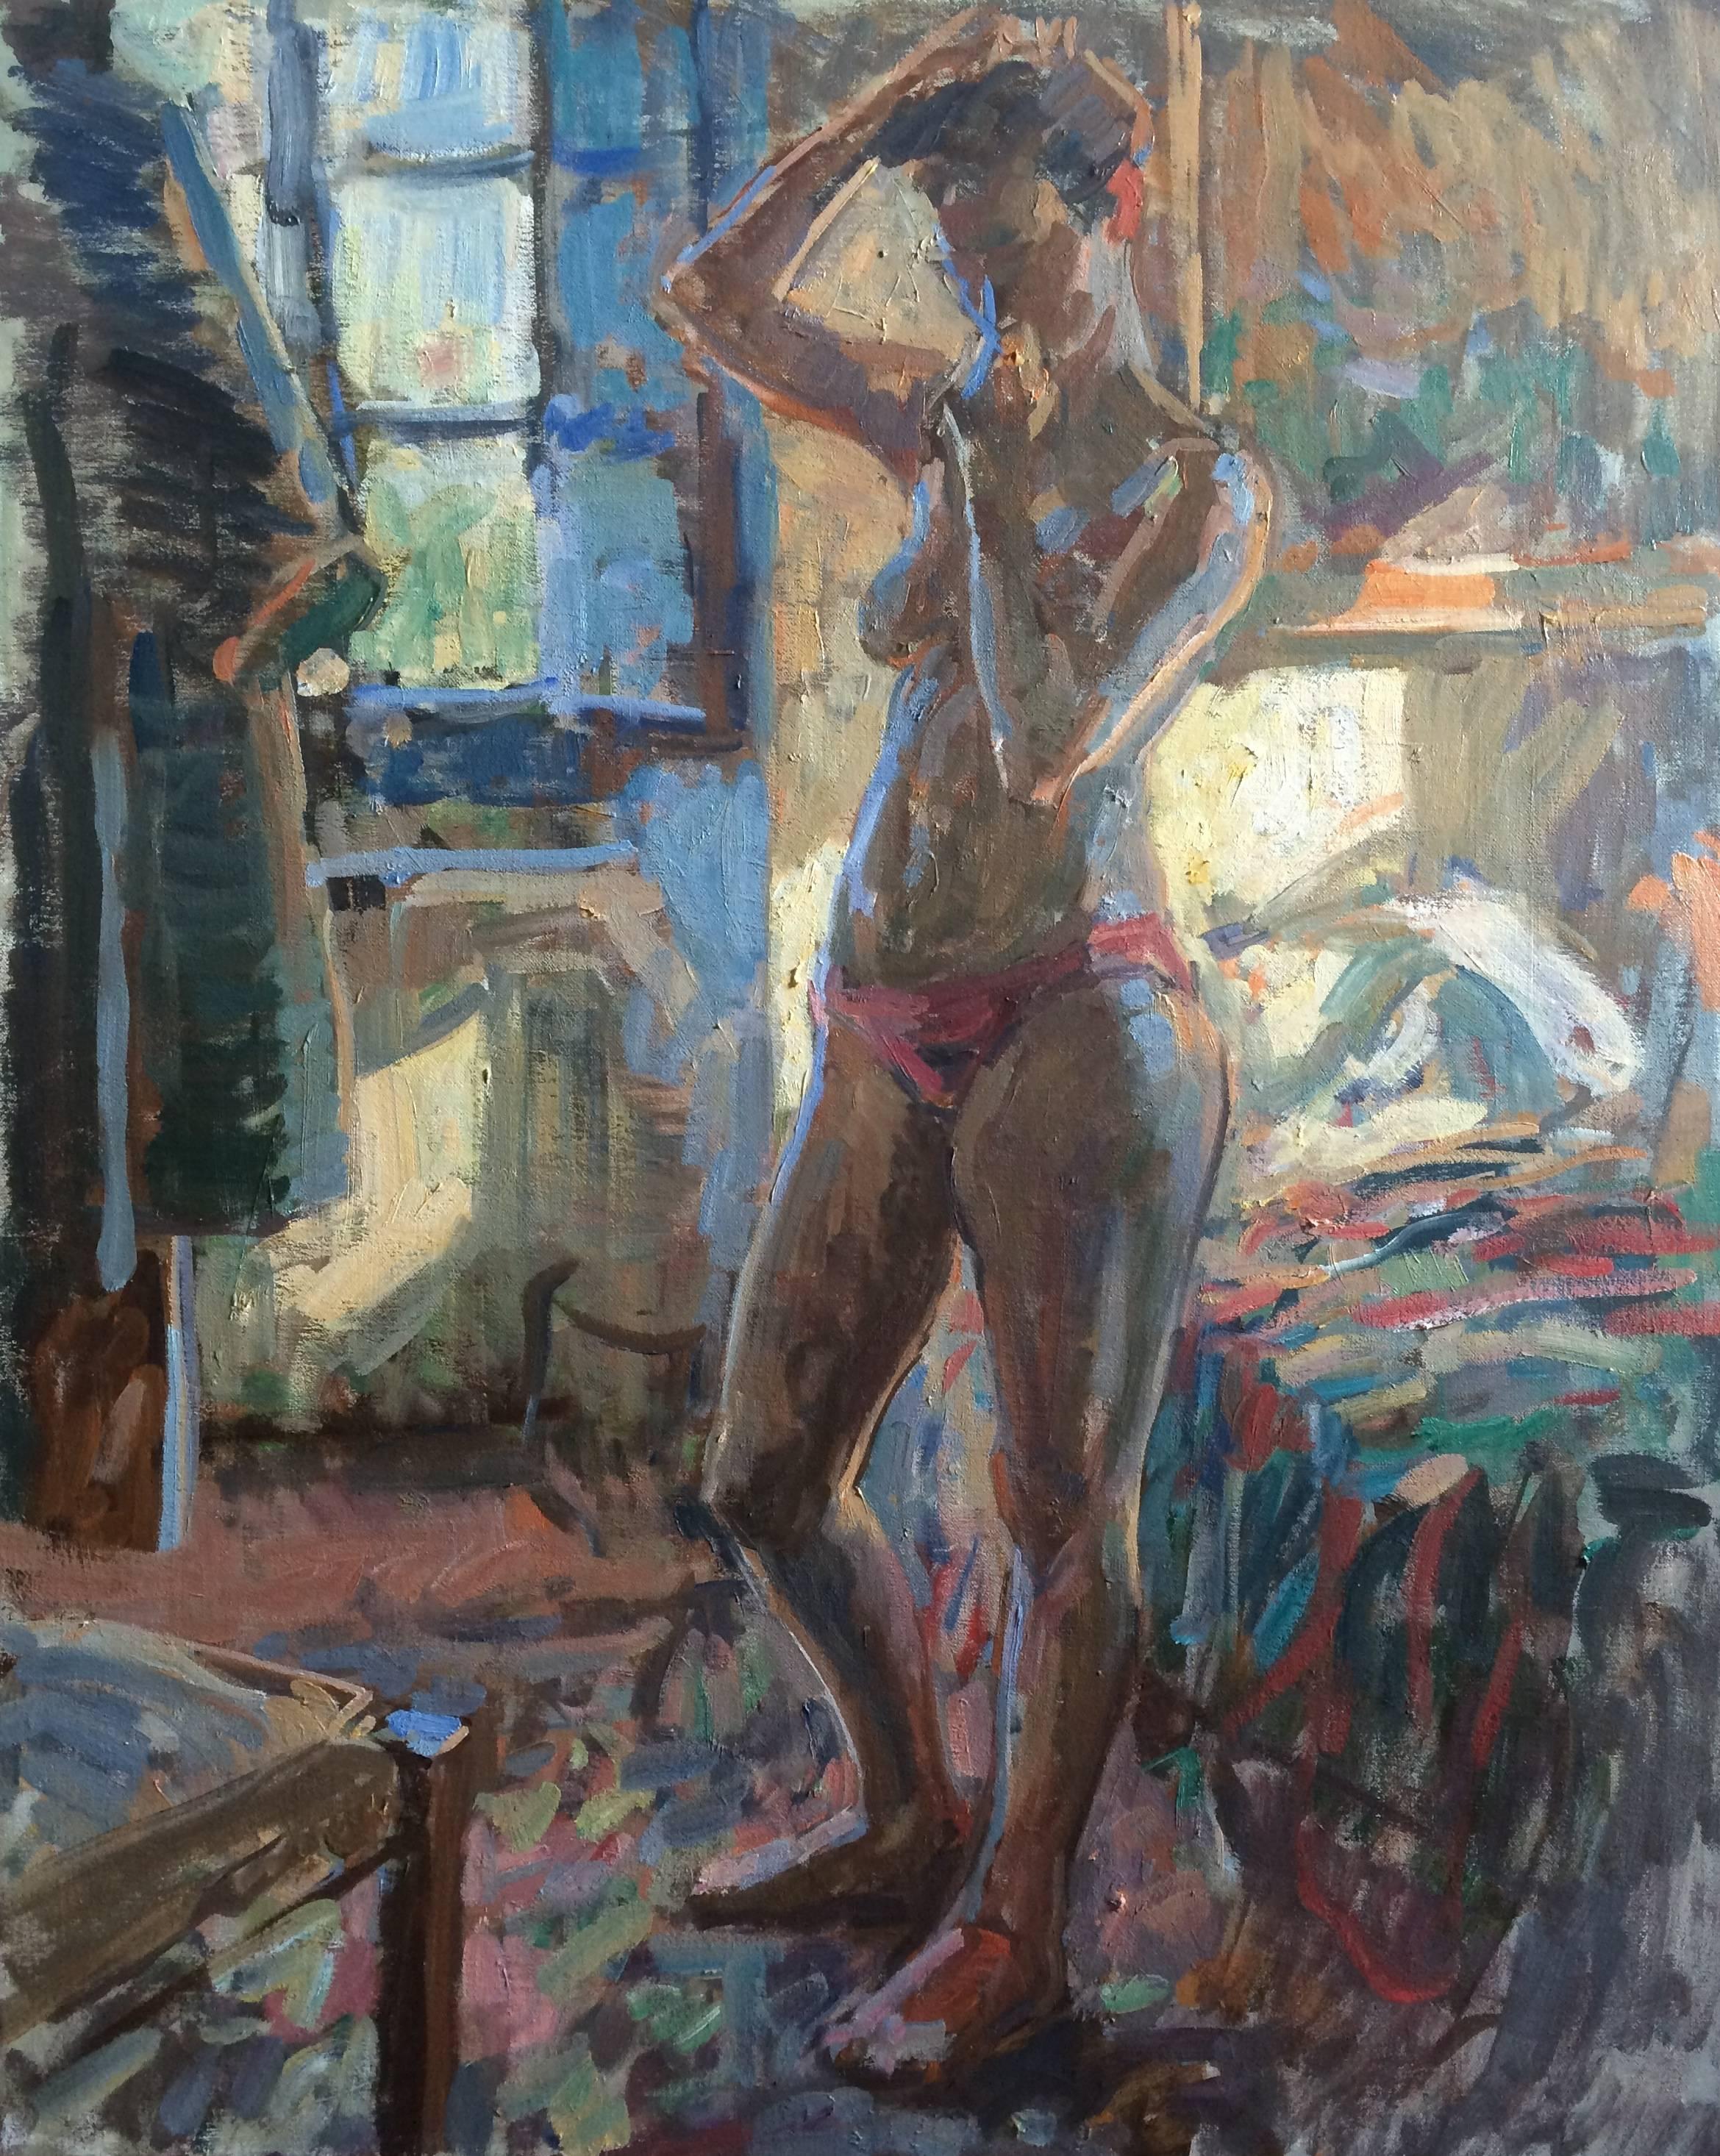 Ben Fenske Nude Painting – "Blue Light Nude, Bea" zeitgenössisches impressionistisches Gemälde einer stehenden Muse